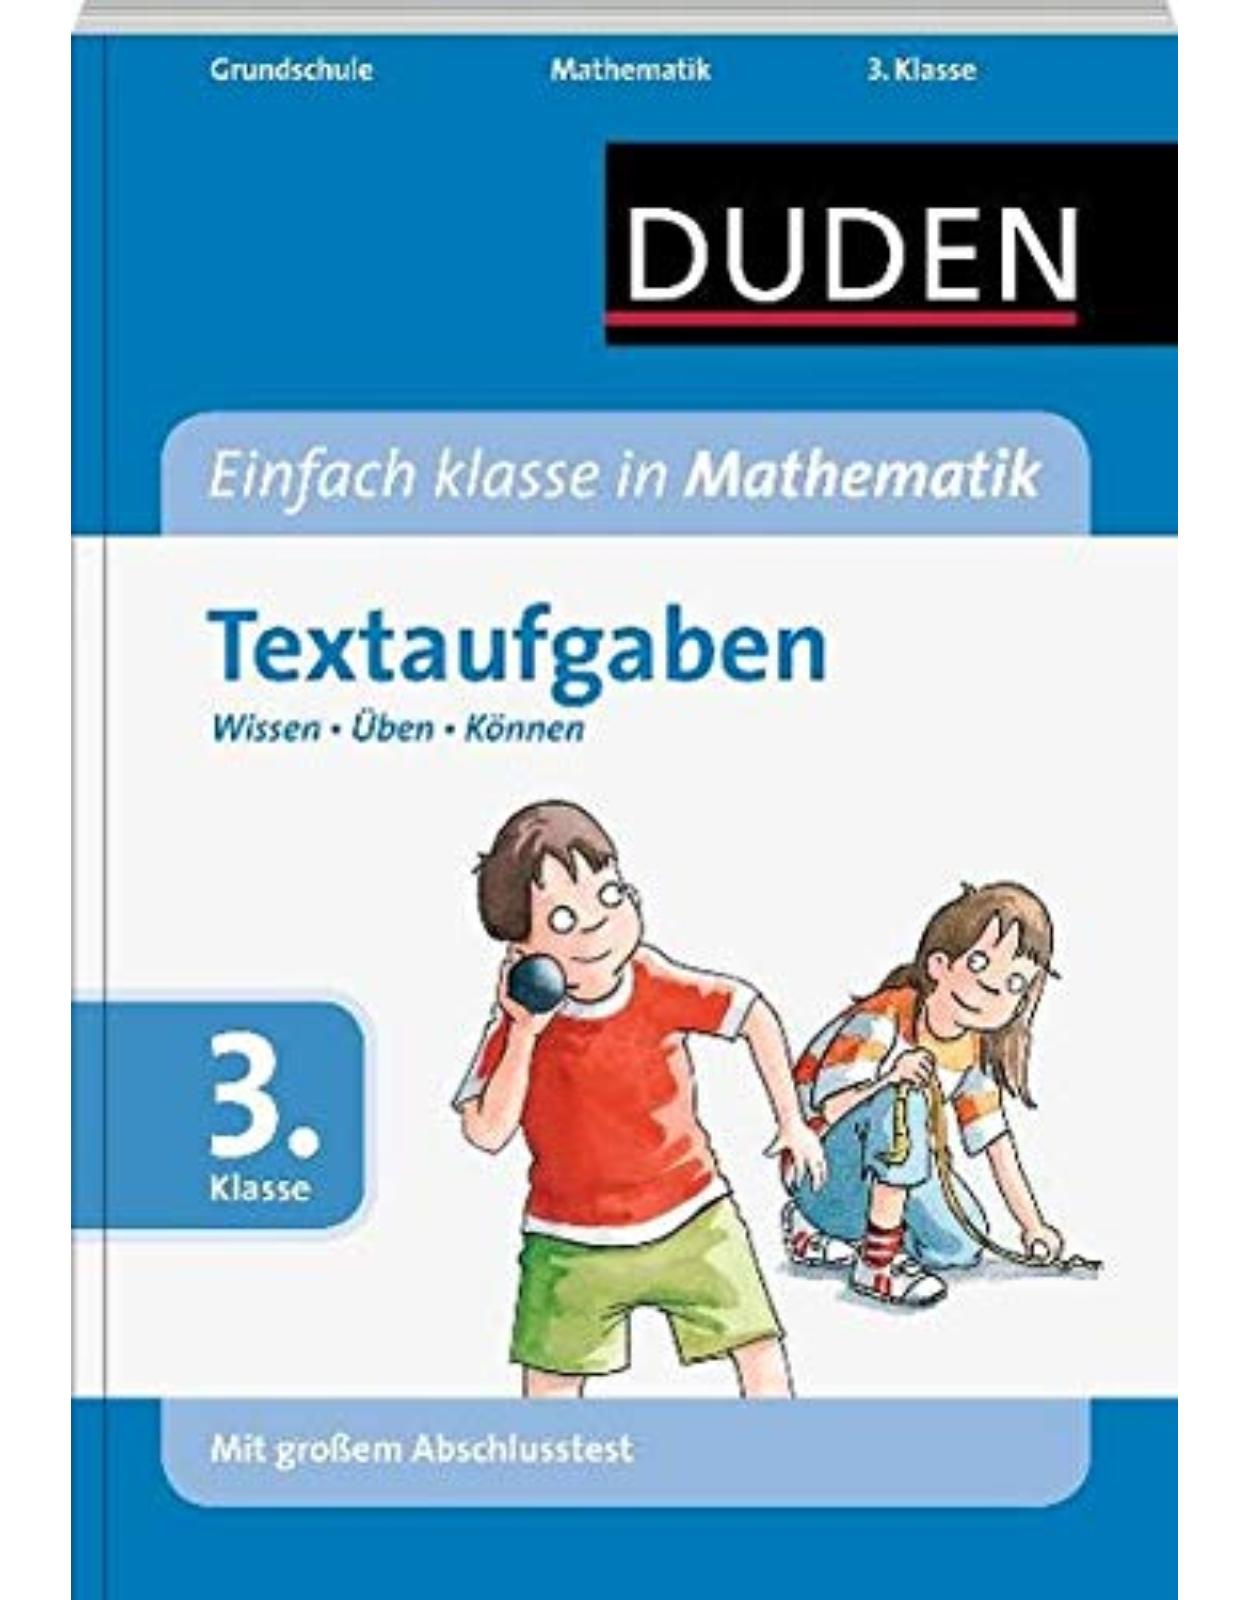 Duden - Einfach klasse in Mathematik 3. Klasse. Textaufgaben